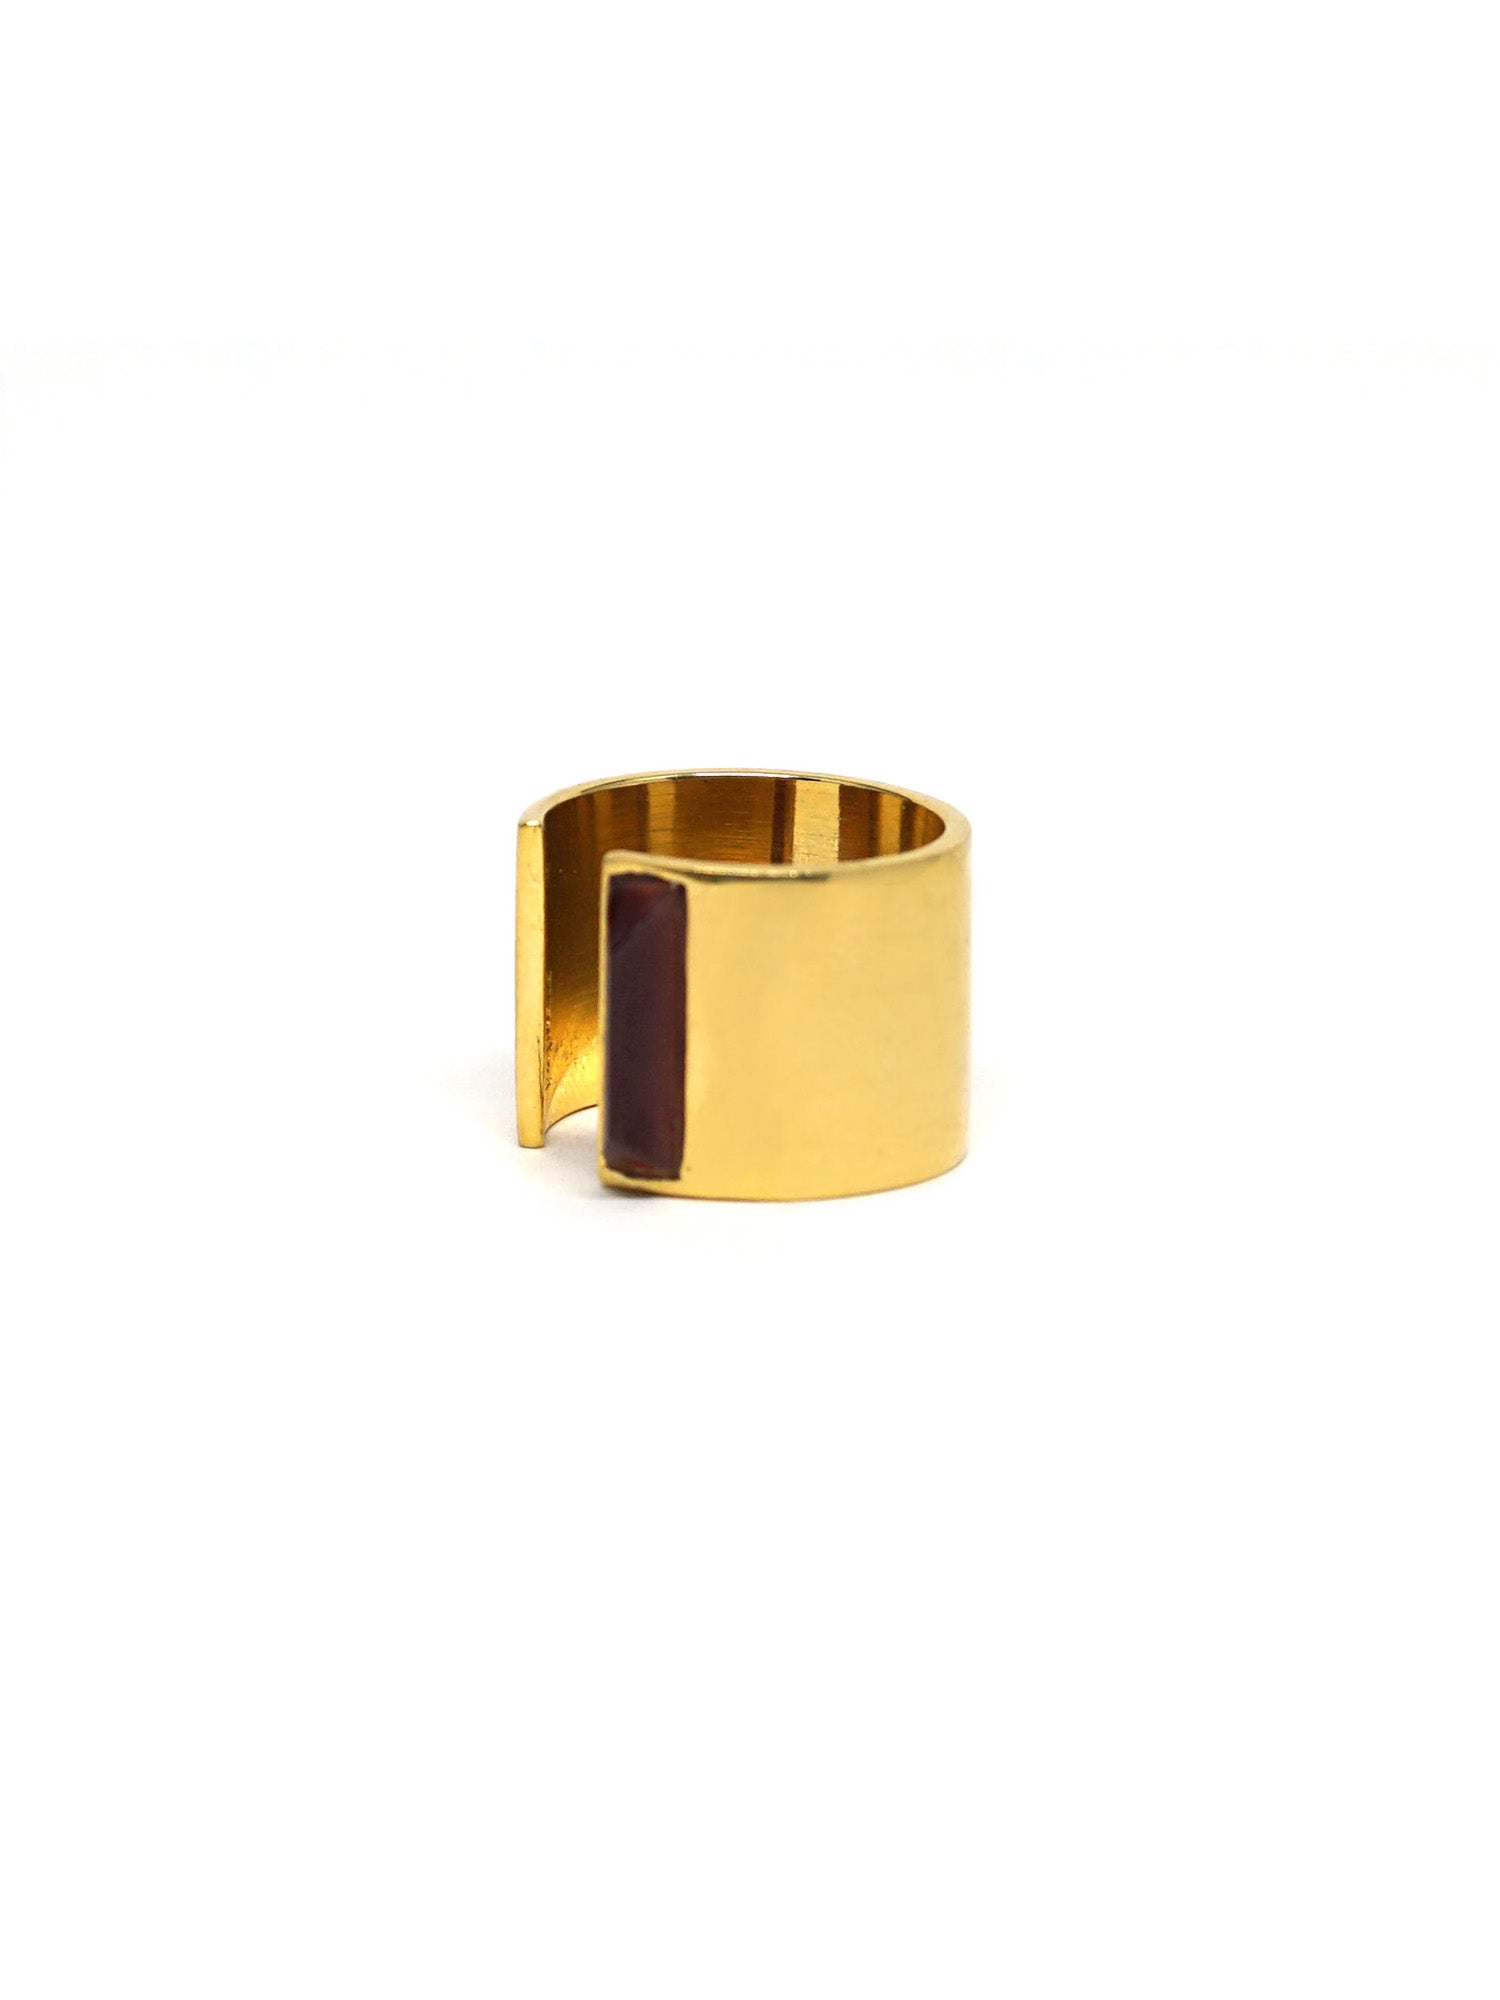 Linear Edge Ring - Gold - Garnet